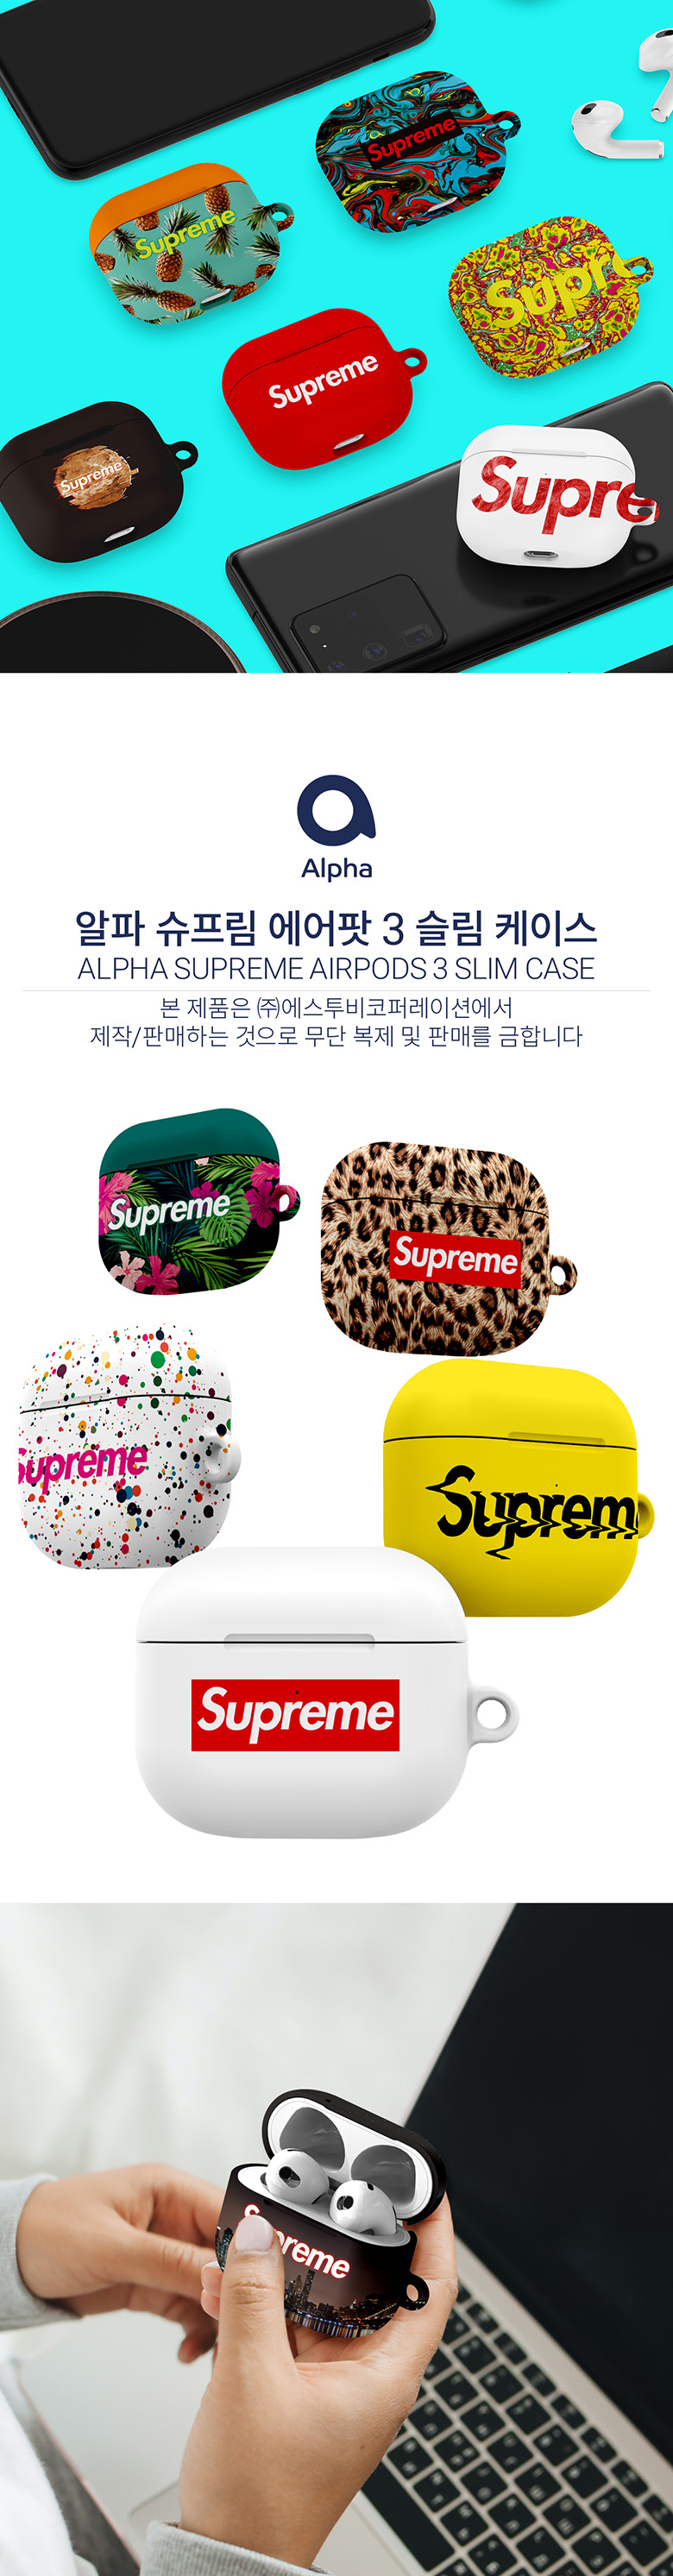 Supreme Airpod 3 Case Pro